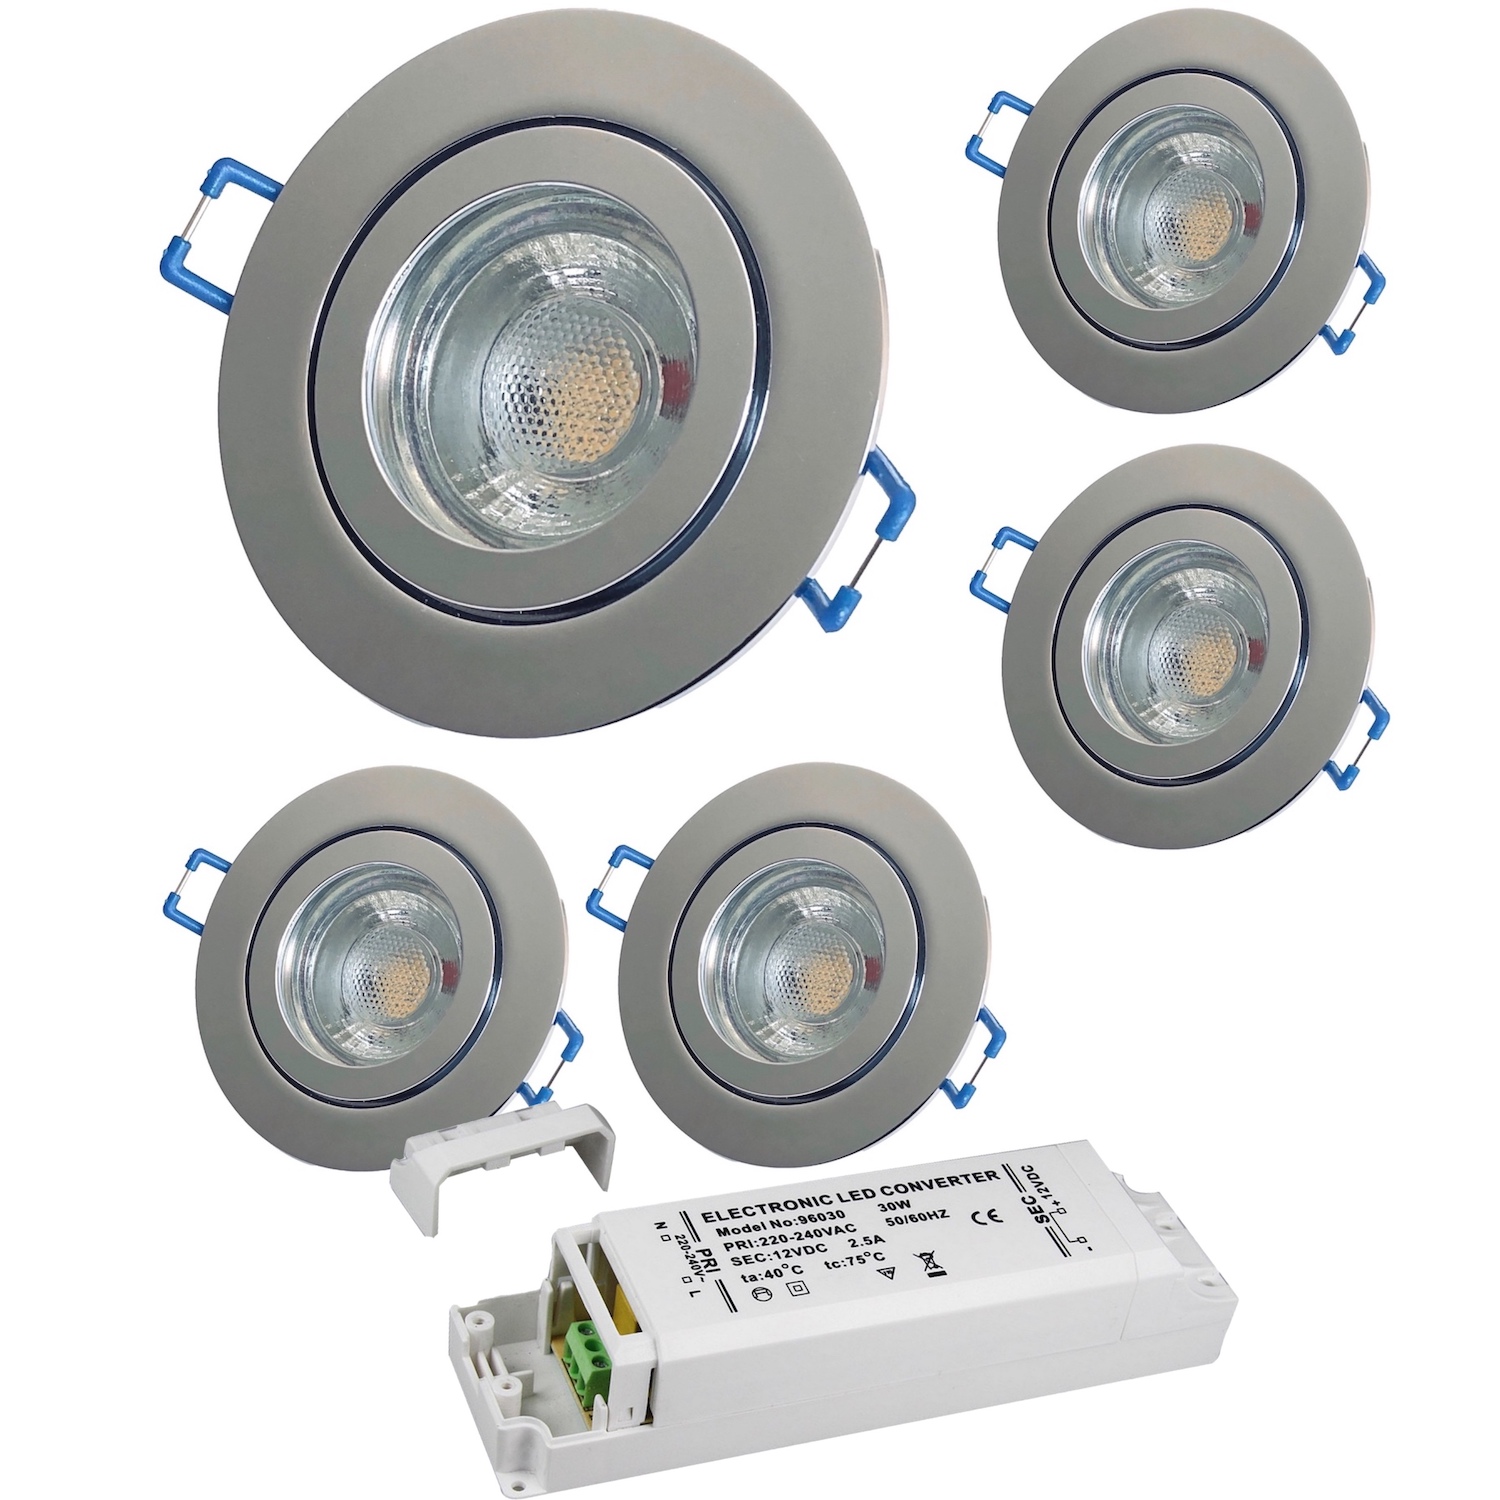 1-10 Stück MCOB LED Bad Einbaustrahler Wave 230 Volt 5 Watt Chrom glänzend 